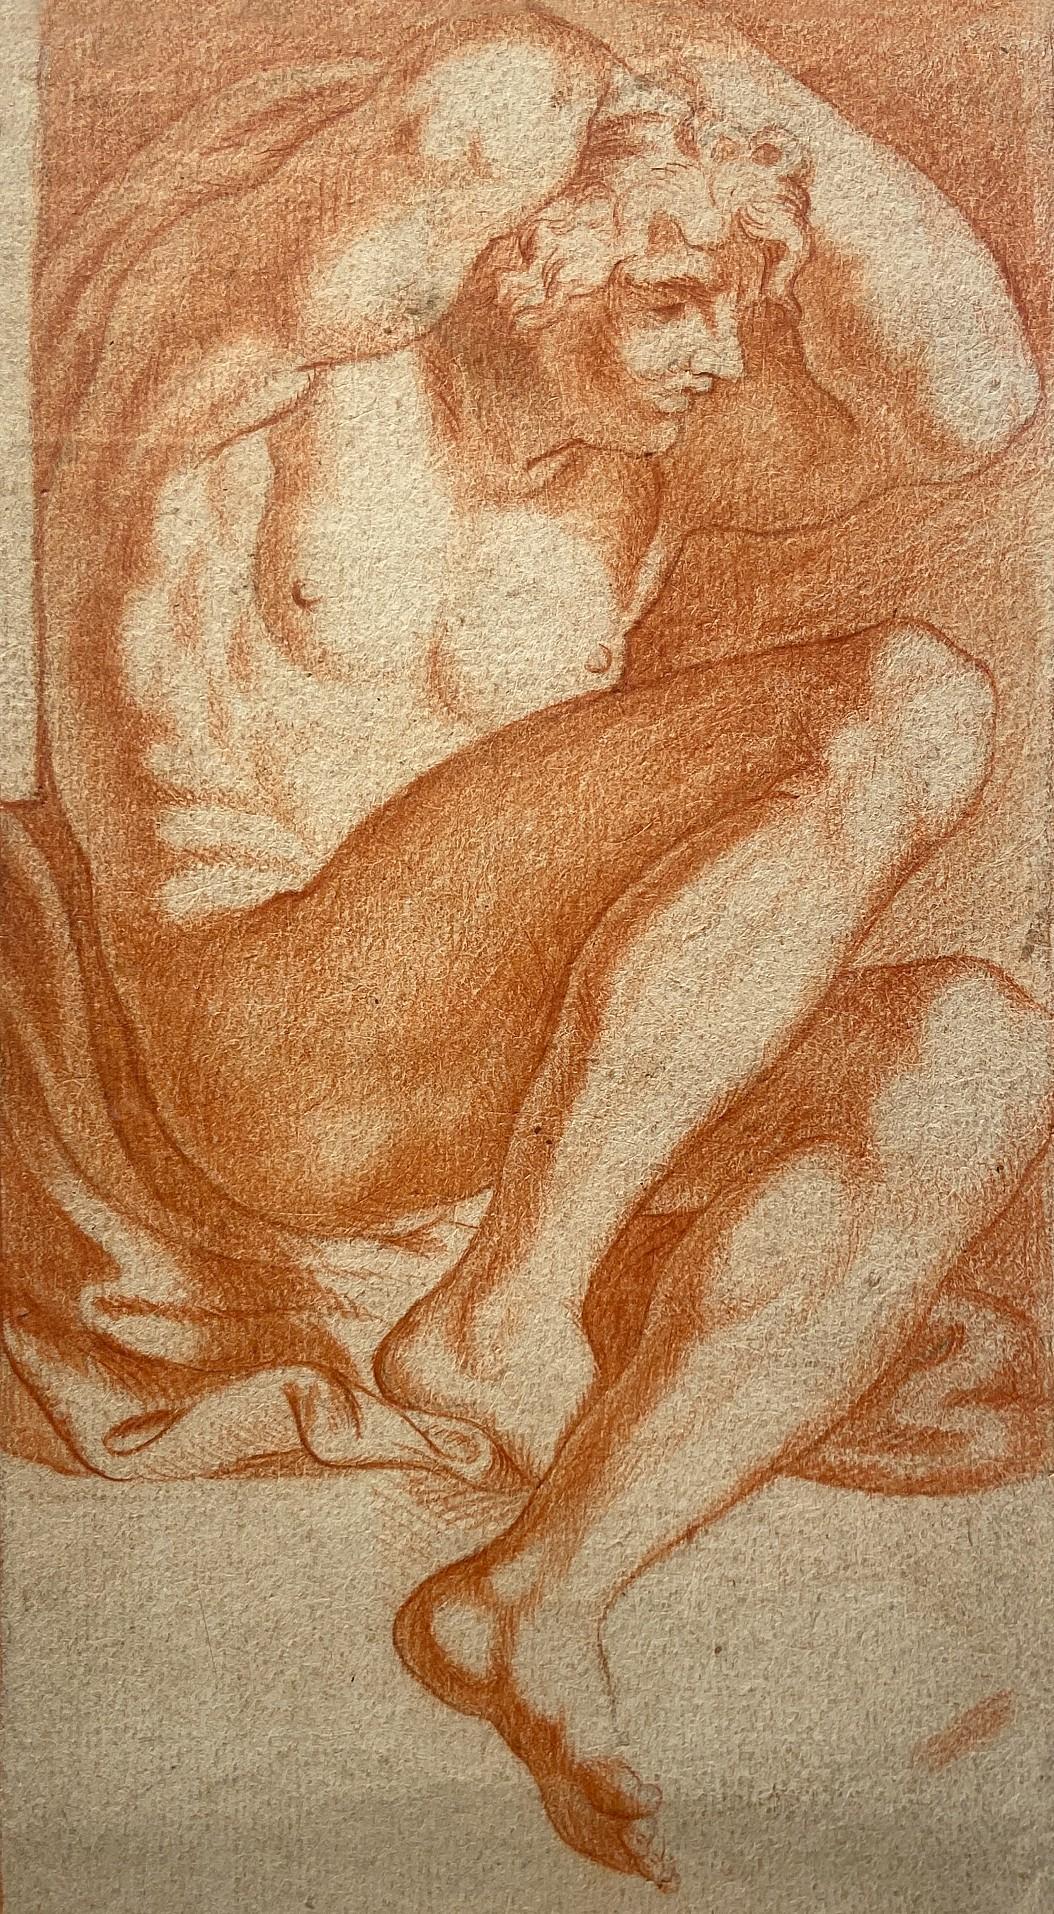 The Captive, étude d'une jeune fille nue, étude en craie rouge, Carracci Gallery